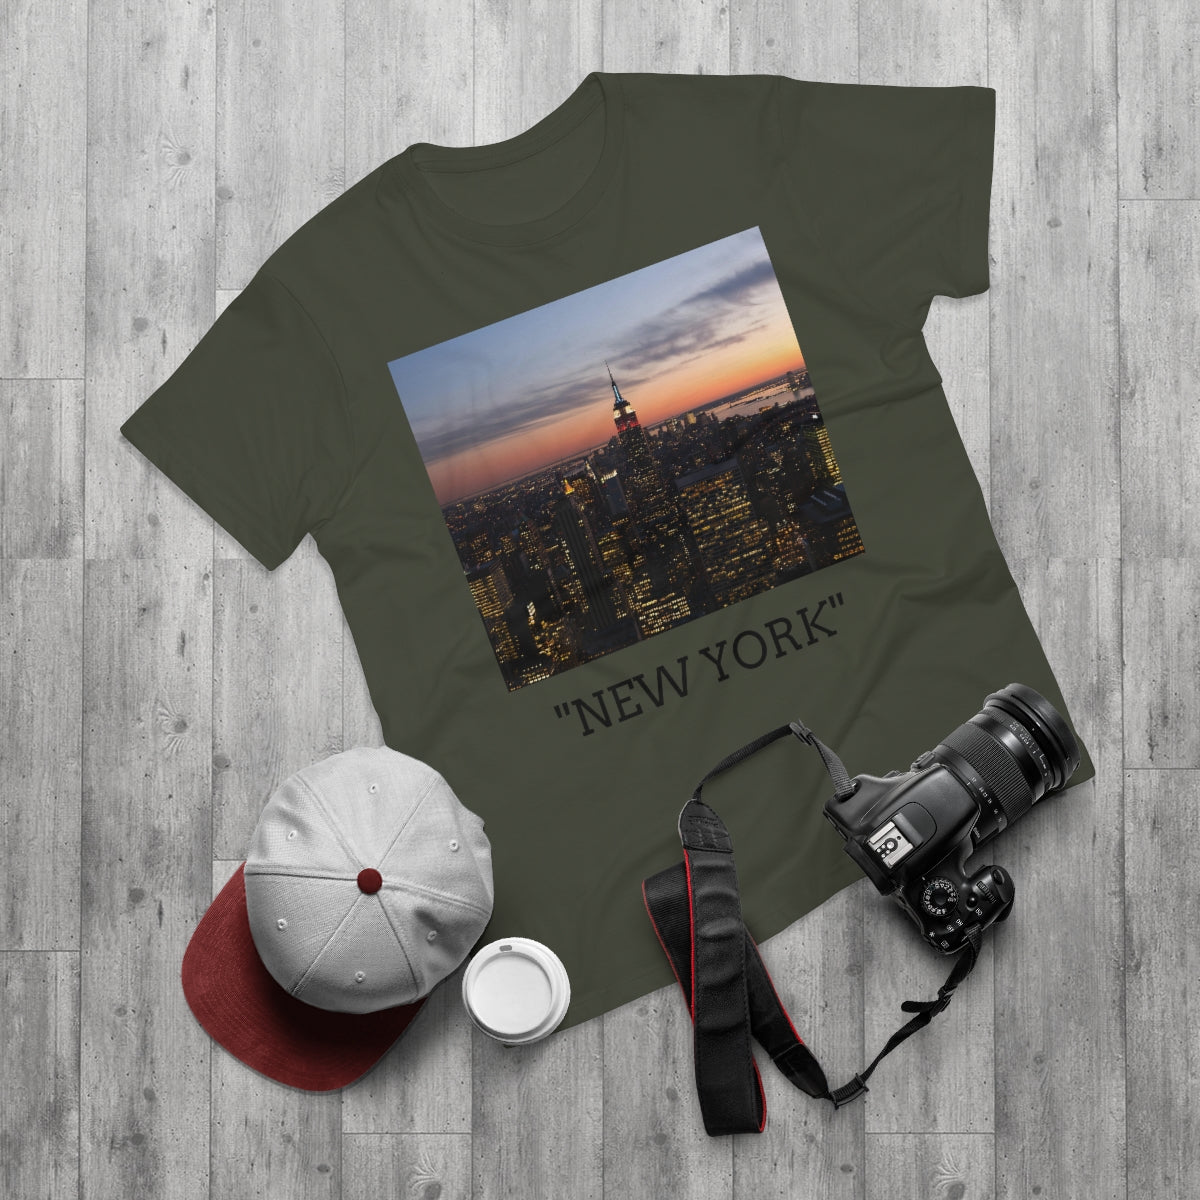 "NEW YORK" Men's T-shirt